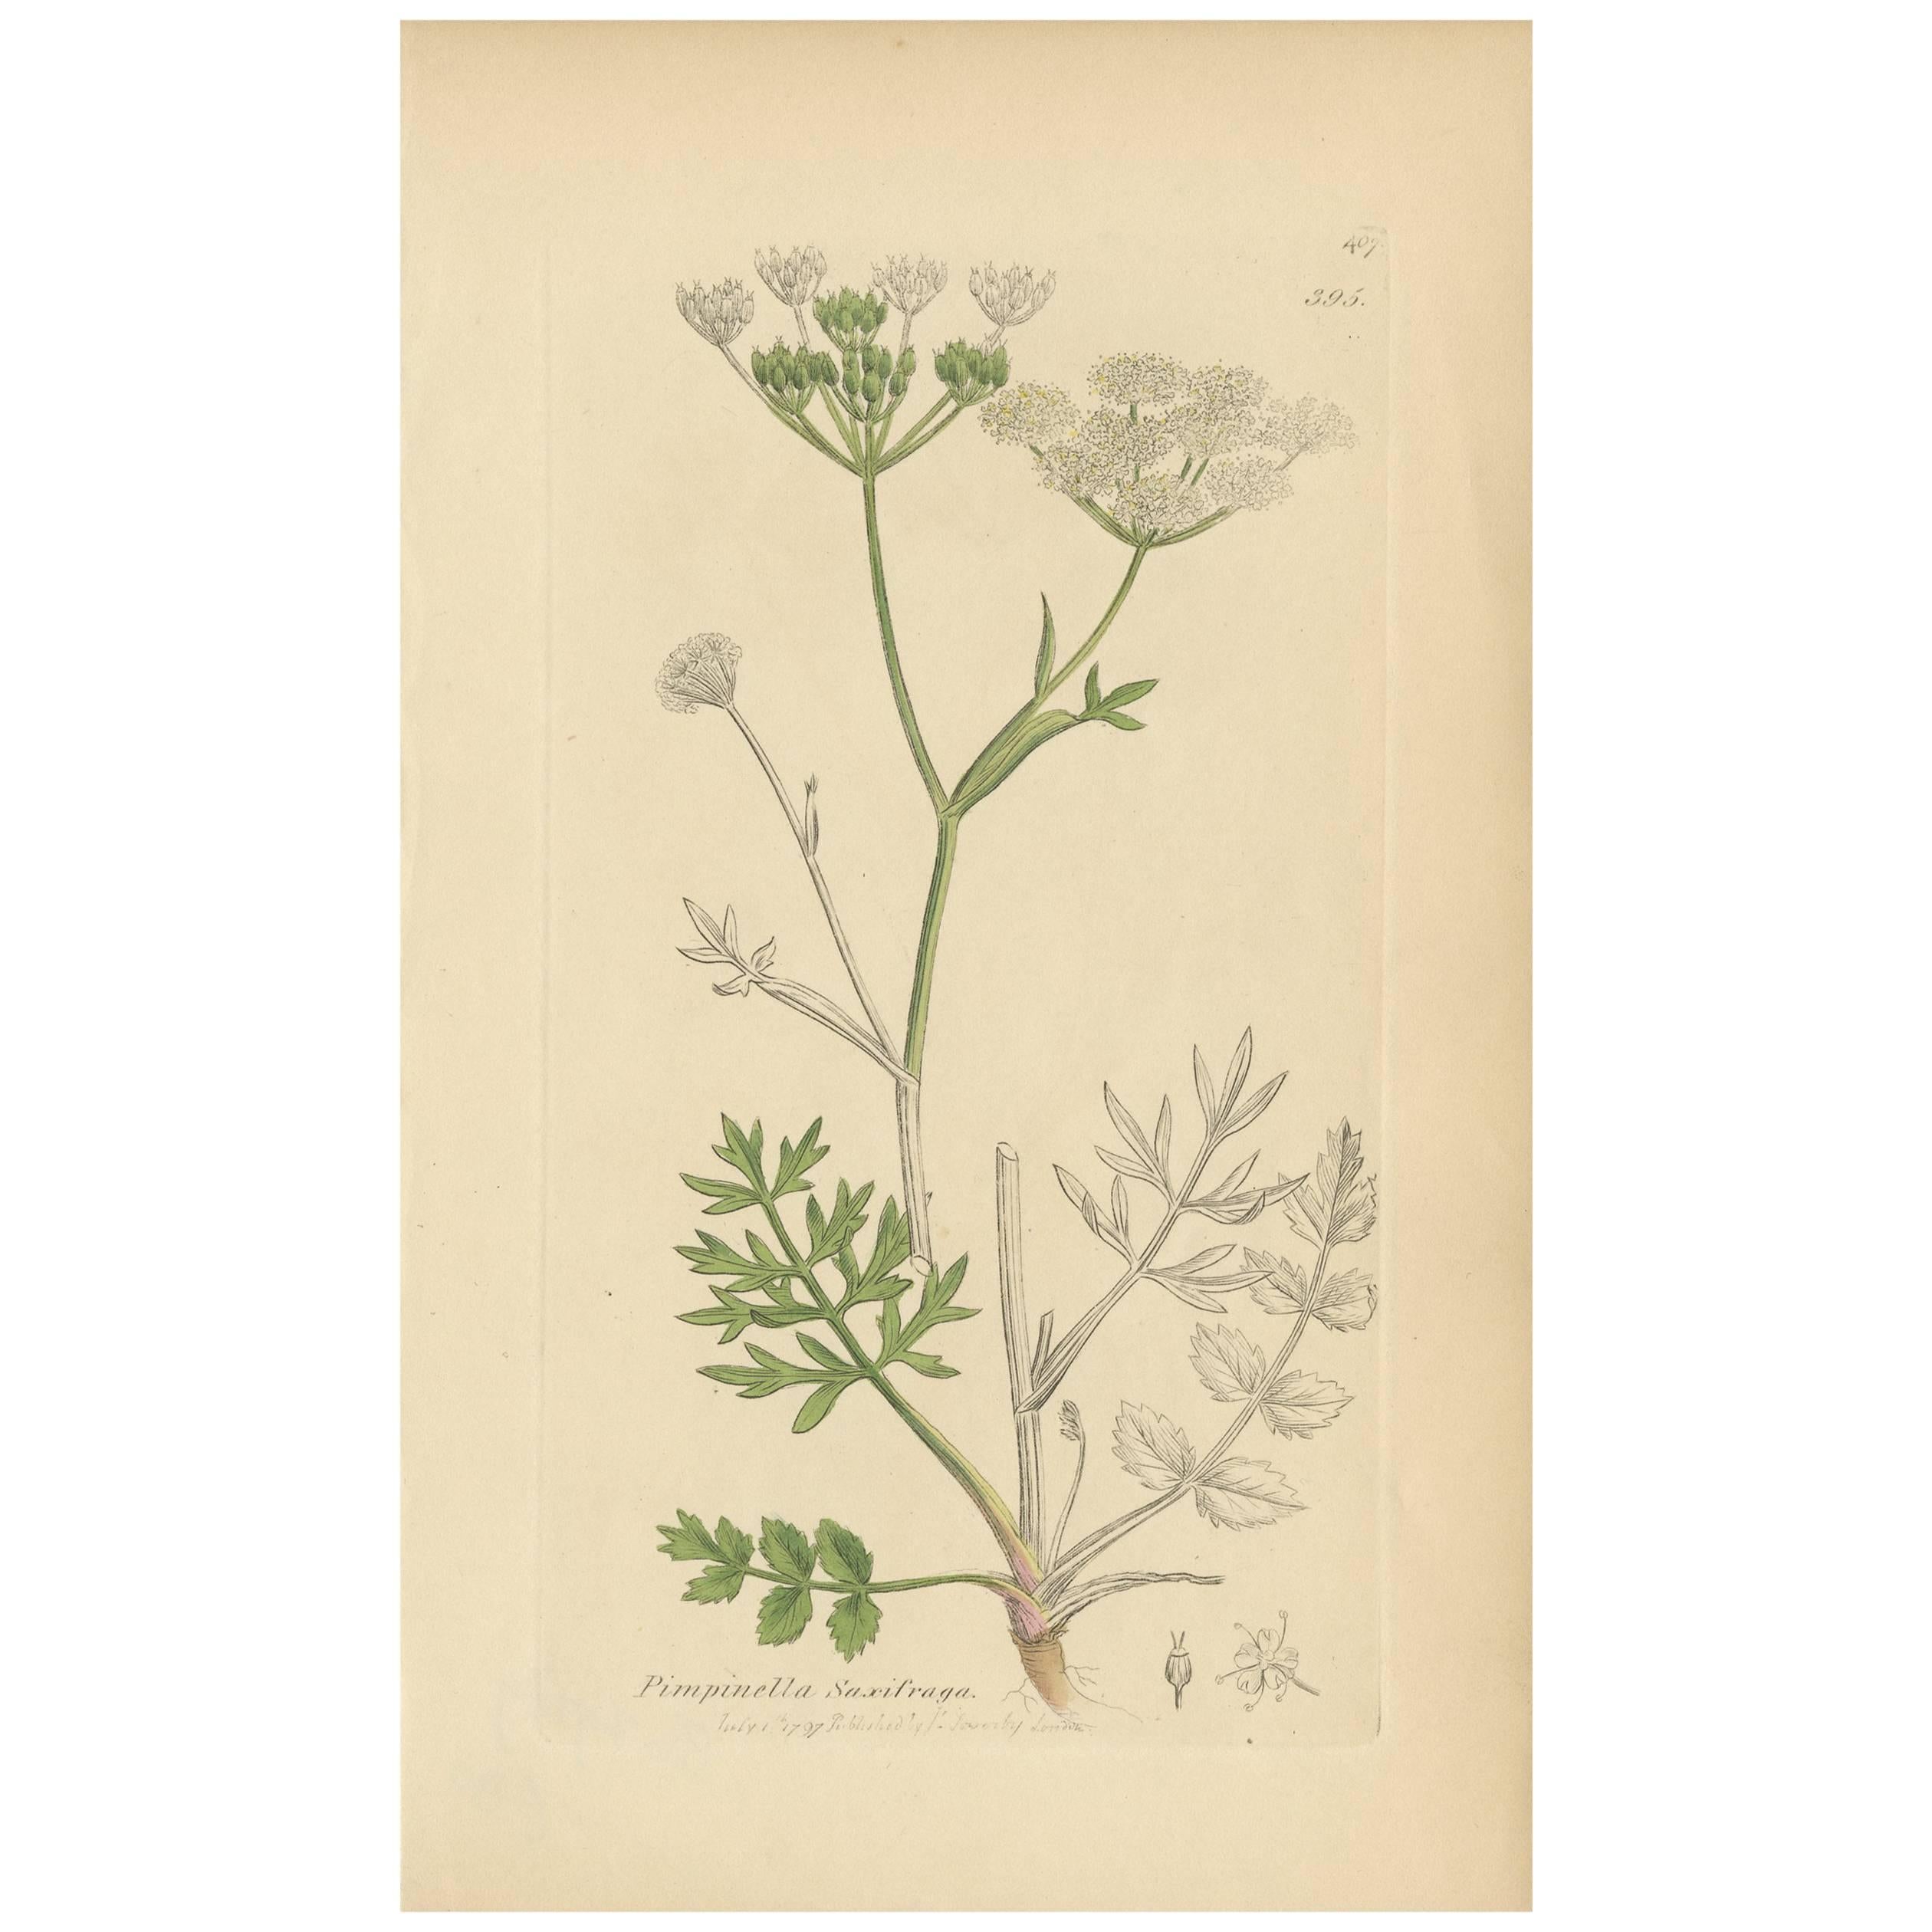 Impression botanique ancienne de Piimpinella Saxifraga par J. Sowerby, 1797